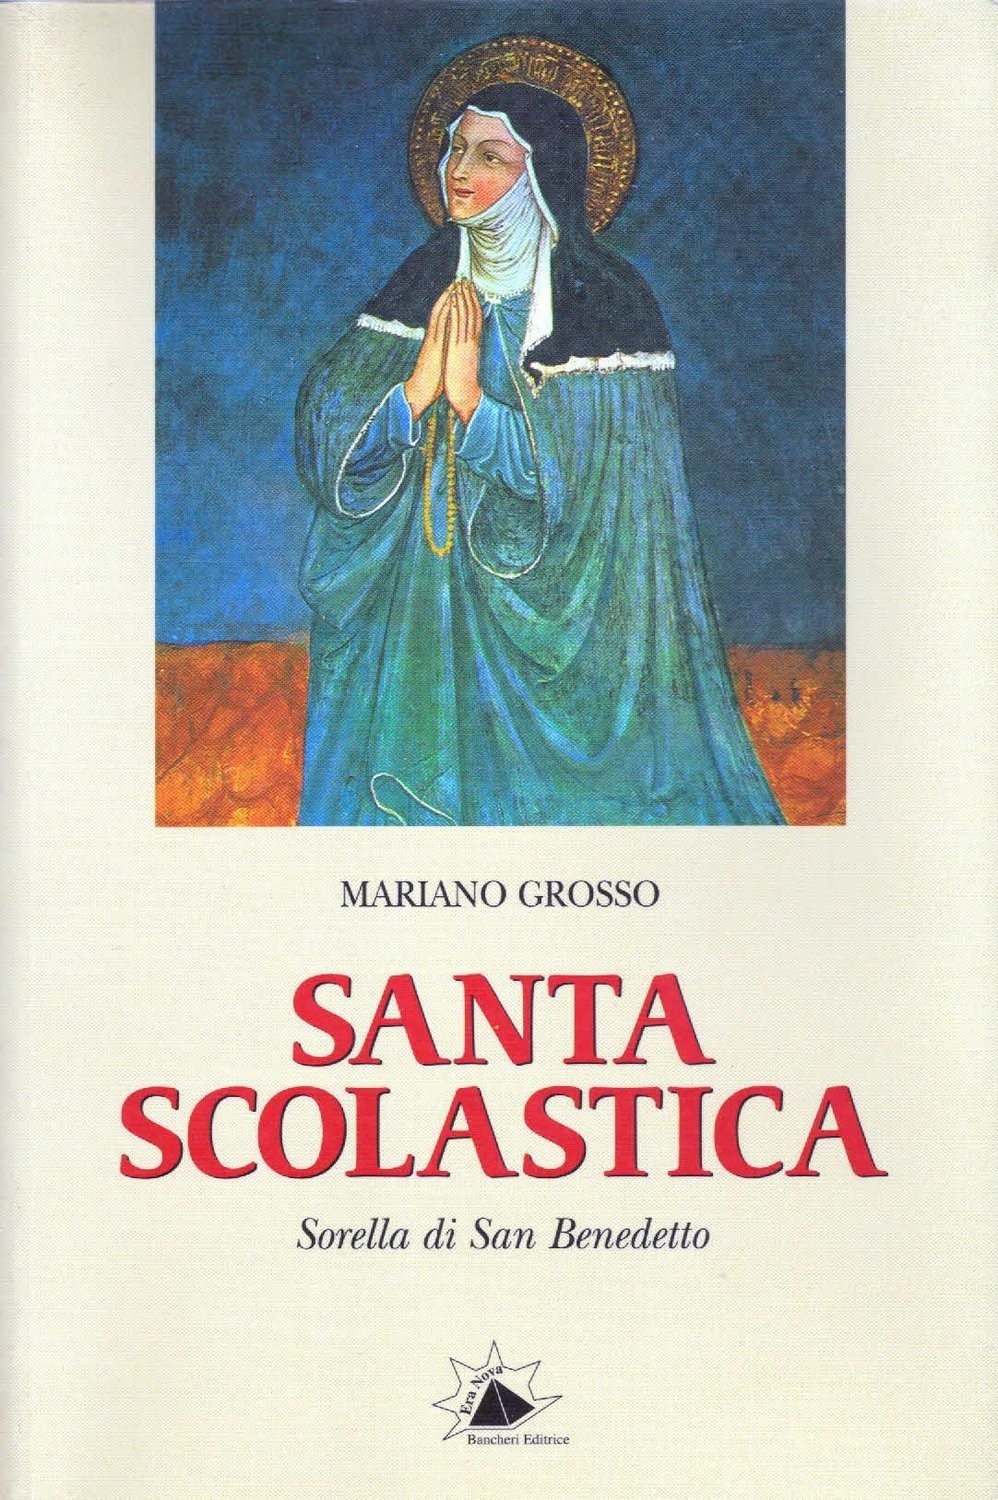 Santa Scolastica. Sorella di San Benedetto.
Mariano Grosso